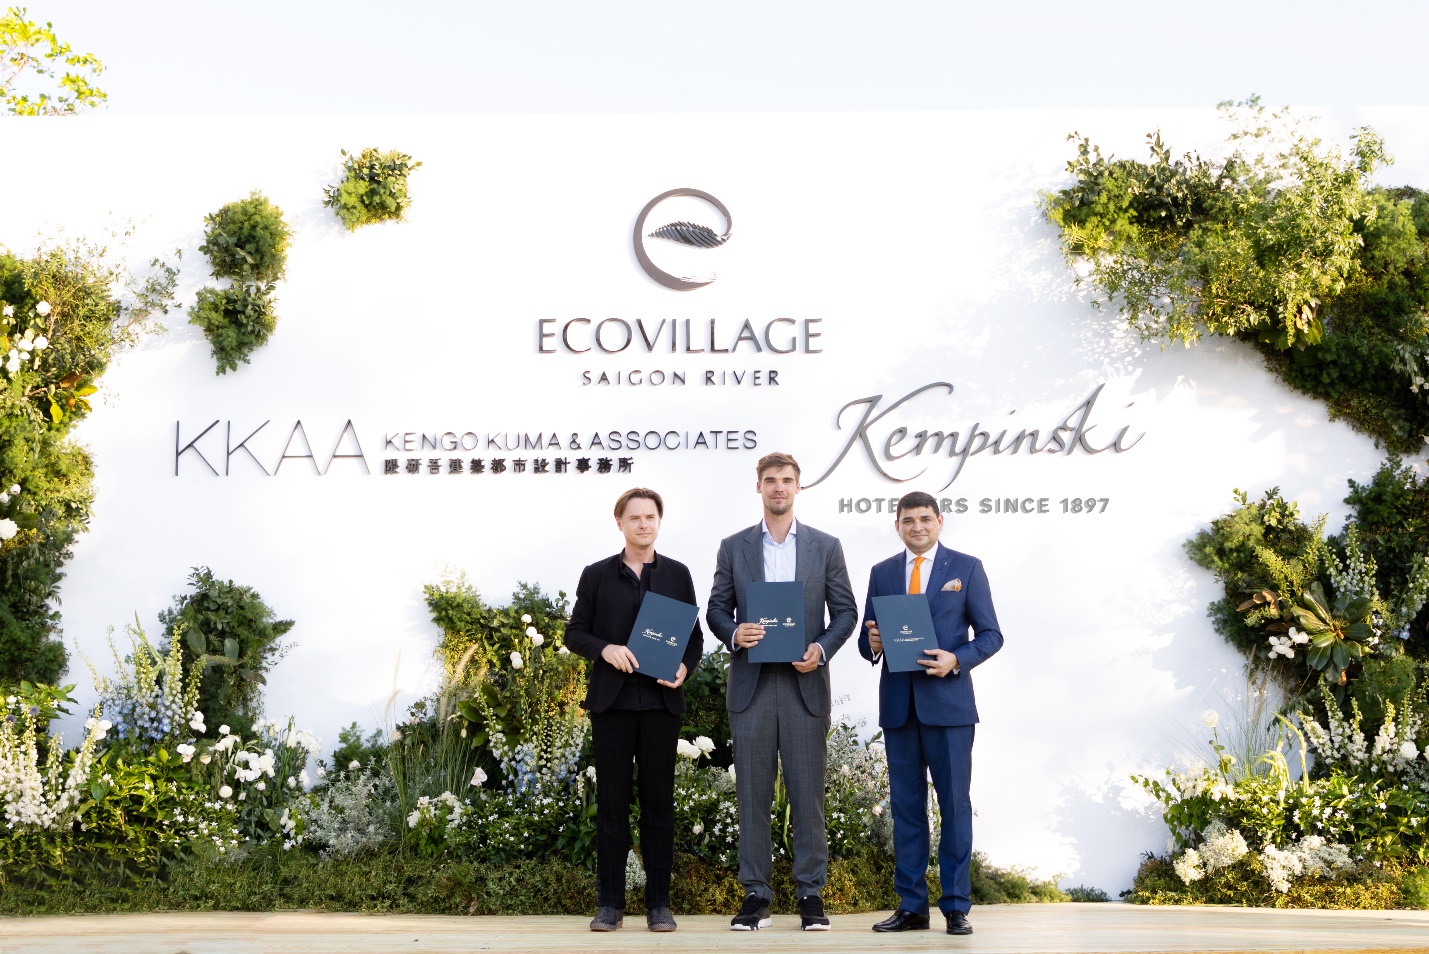 Đại diện Kengo Kuma & Associates, Ecovillage Saigon River, Kempinski Hotels tại lễ kí kết hợp tác hôm 28/4